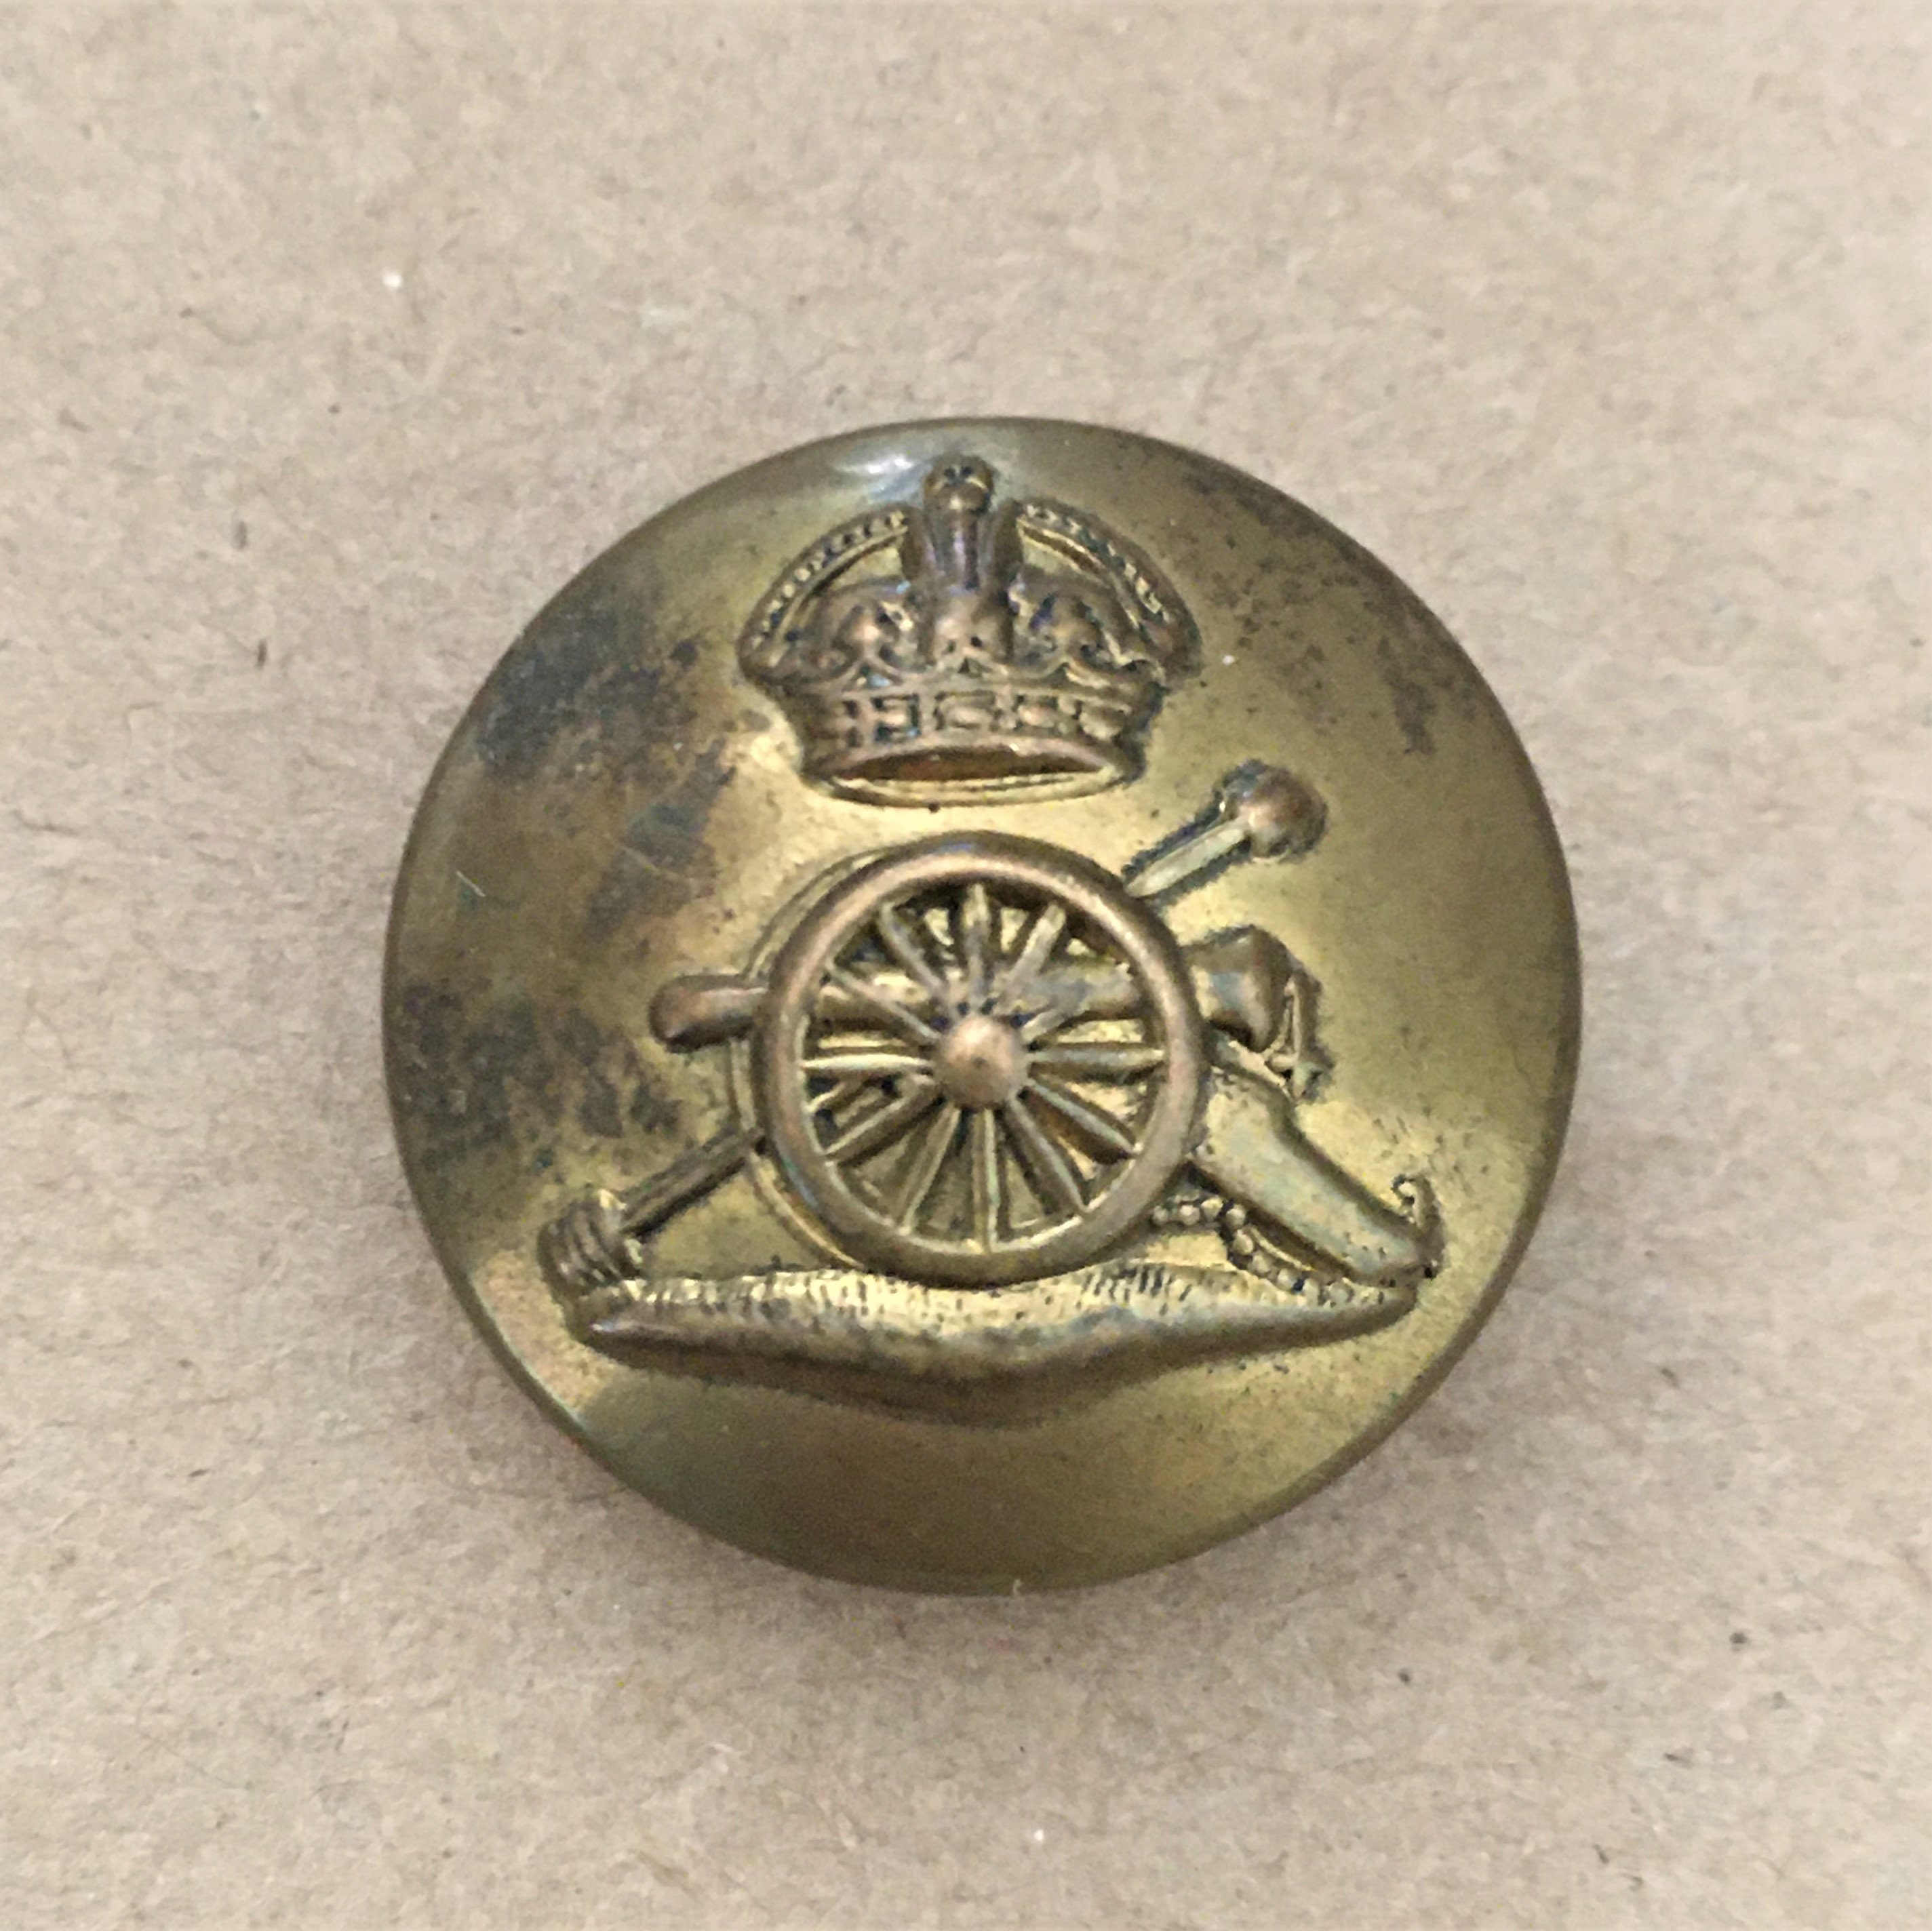 Vintage Royal Artillery Brass Button. Armfield & Co. Ltd. - Etsy UK